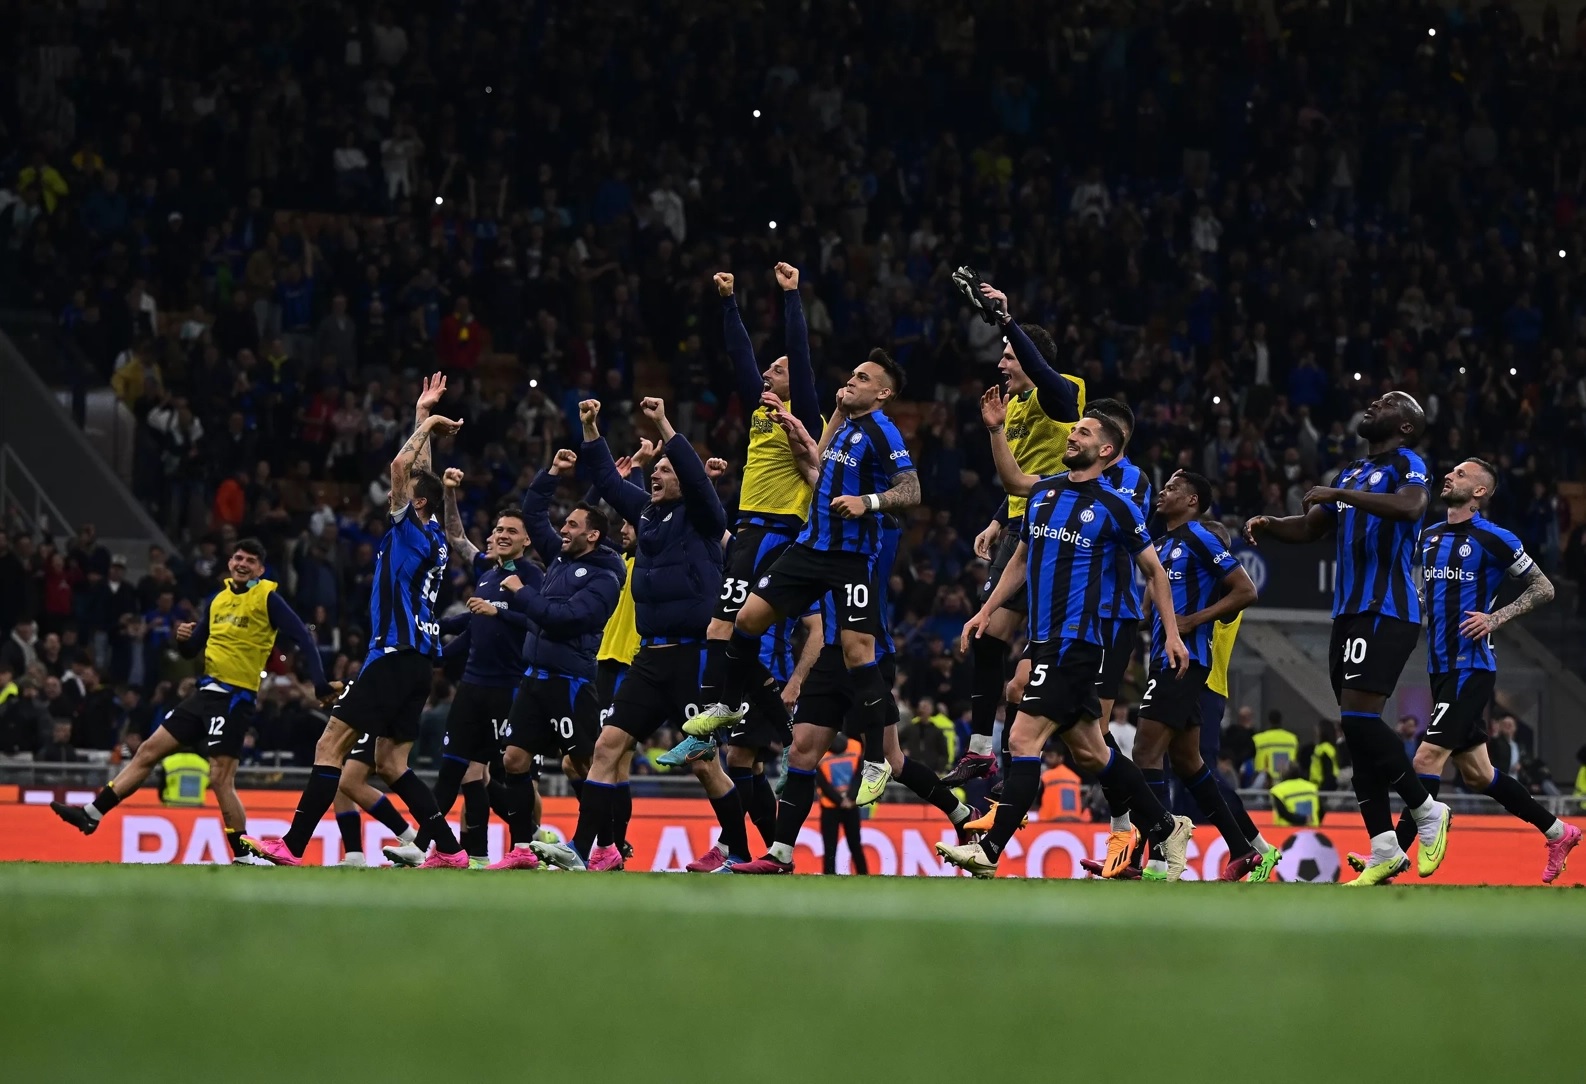 Inter de Milão vai à final da Copa Itália. Jogadores estão no centro de campo. Todos pulam e gritam comemorando a classificação da equipe. Eles vestem uniforme azul com listras verticais pretas e calção preto.